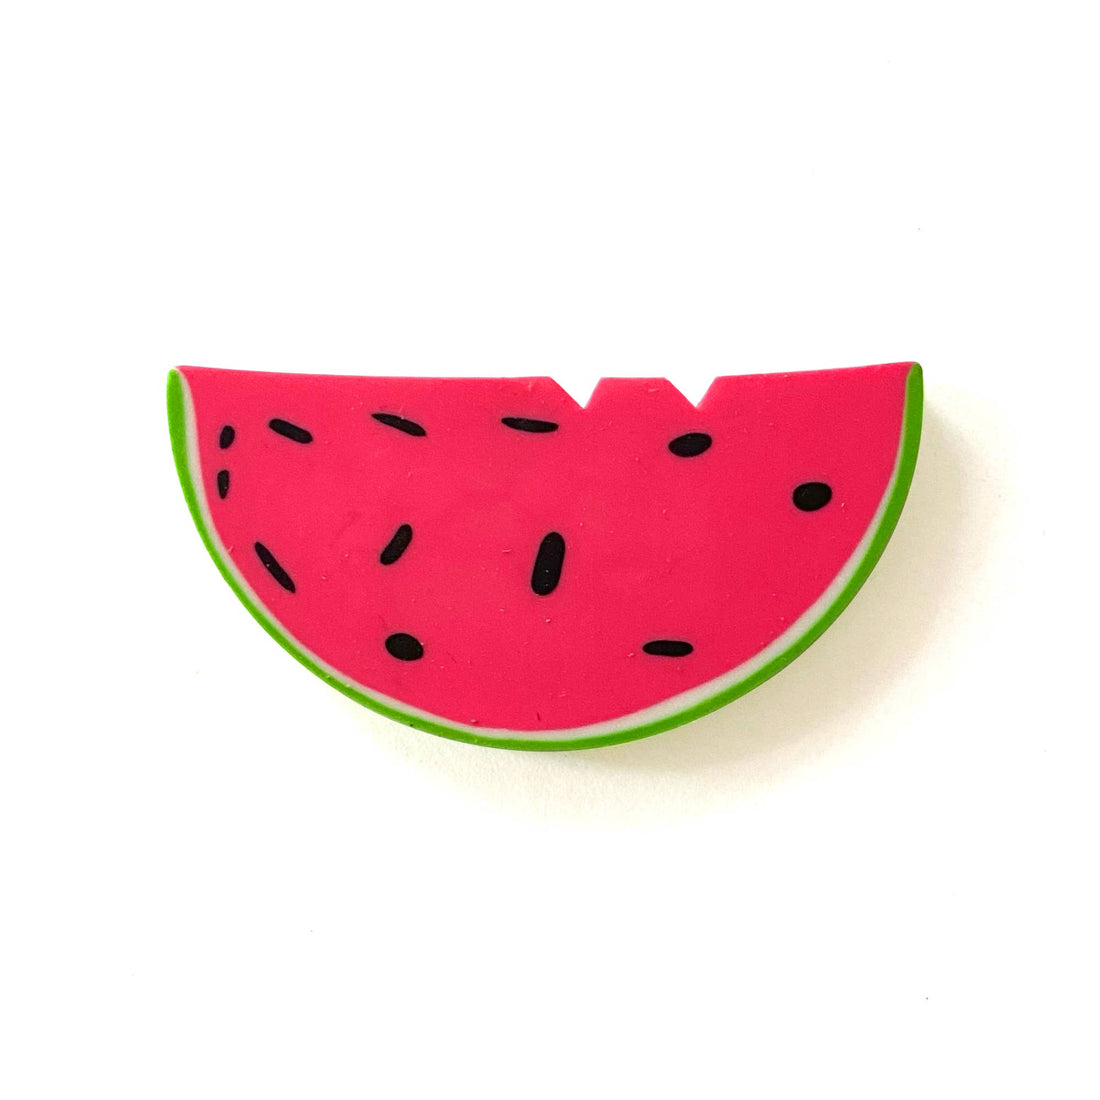 watermelon shaped eraser